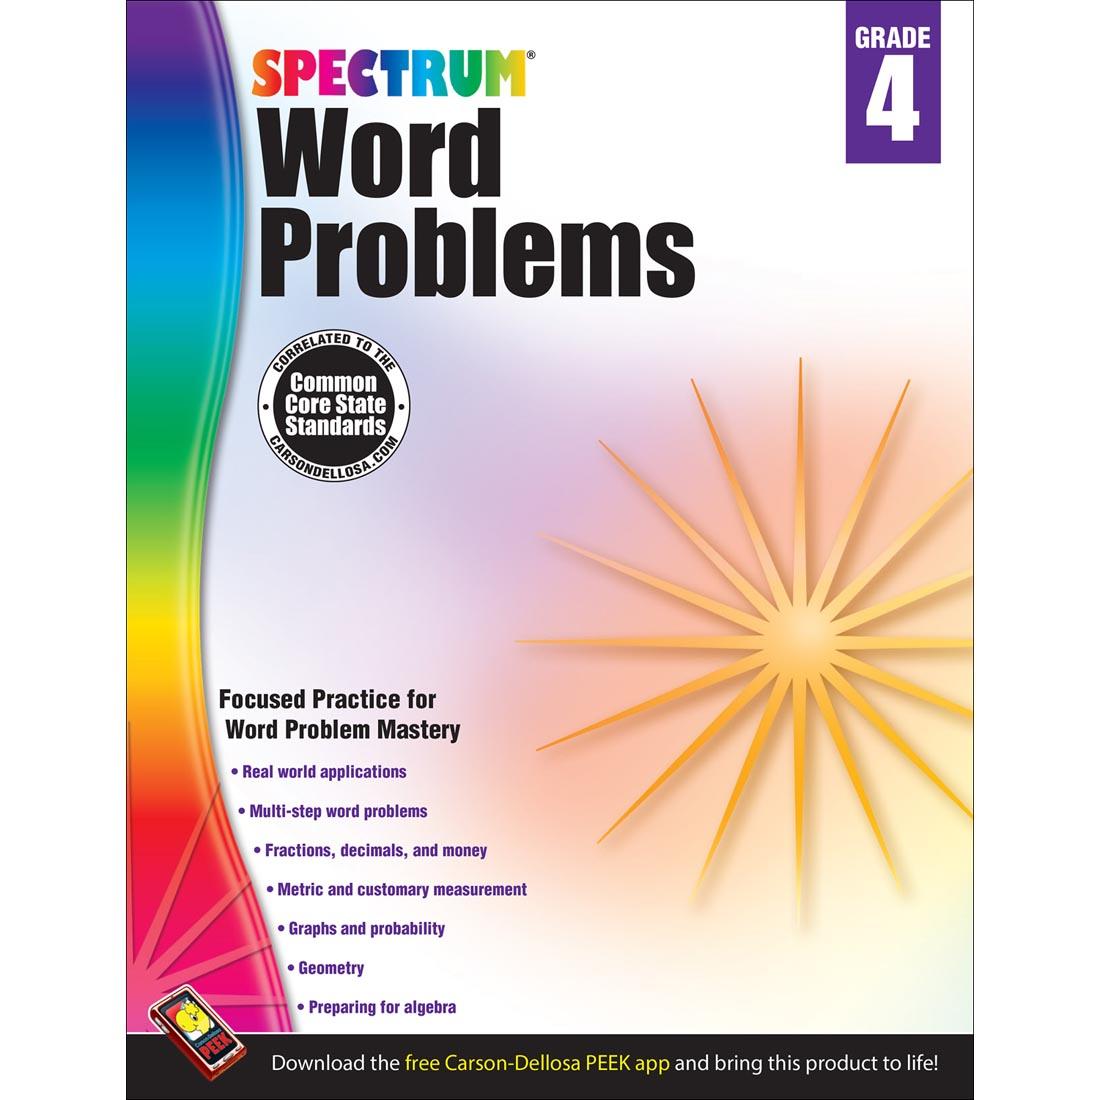 Spectrum Word Problems by Carson Dellosa Grade 4